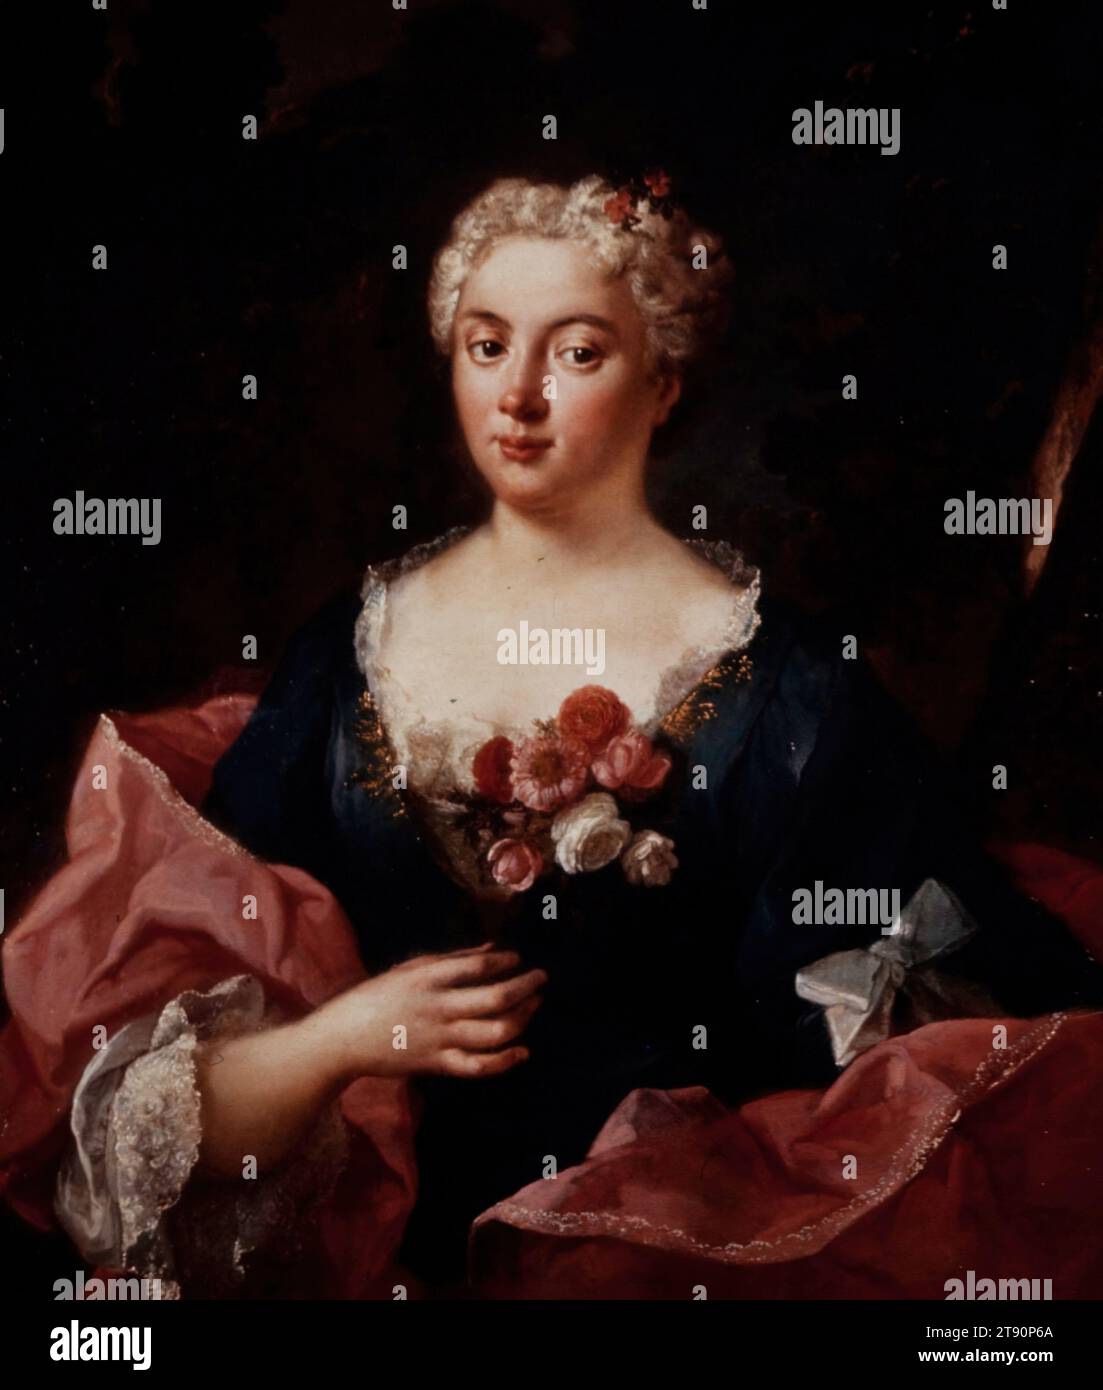 Portrait of Faustina Bordoni, 1738-1740, Count Ludovico Mazzanti, Italian (Rome), Italian (Rome), 1679 - 1775, 43 7/8 x 37 3/8 x 3 1/2 in. (111.44 x 94.93 x 8.89 cm) (outer frame), Oil on canvas, Italy, 18th century Stock Photo